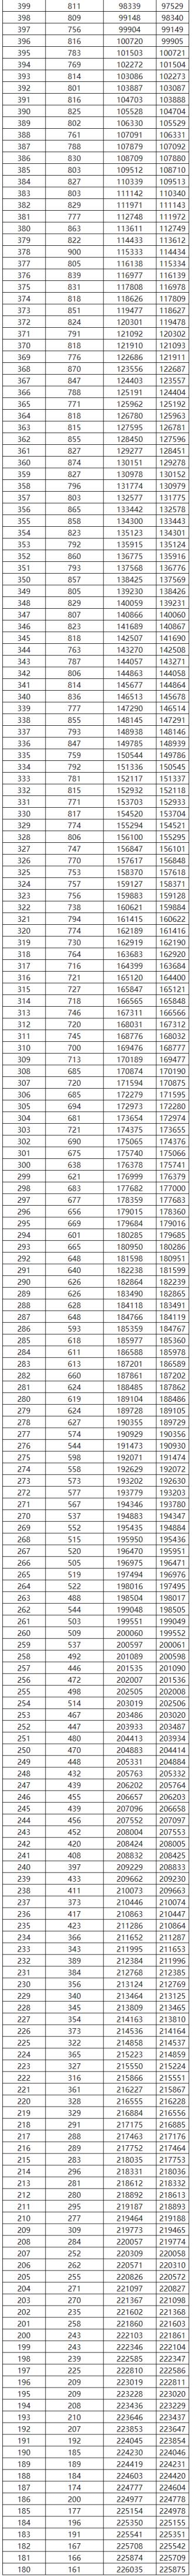 2022广西语文高考分数线(2018广西高考一分一档表(文科))